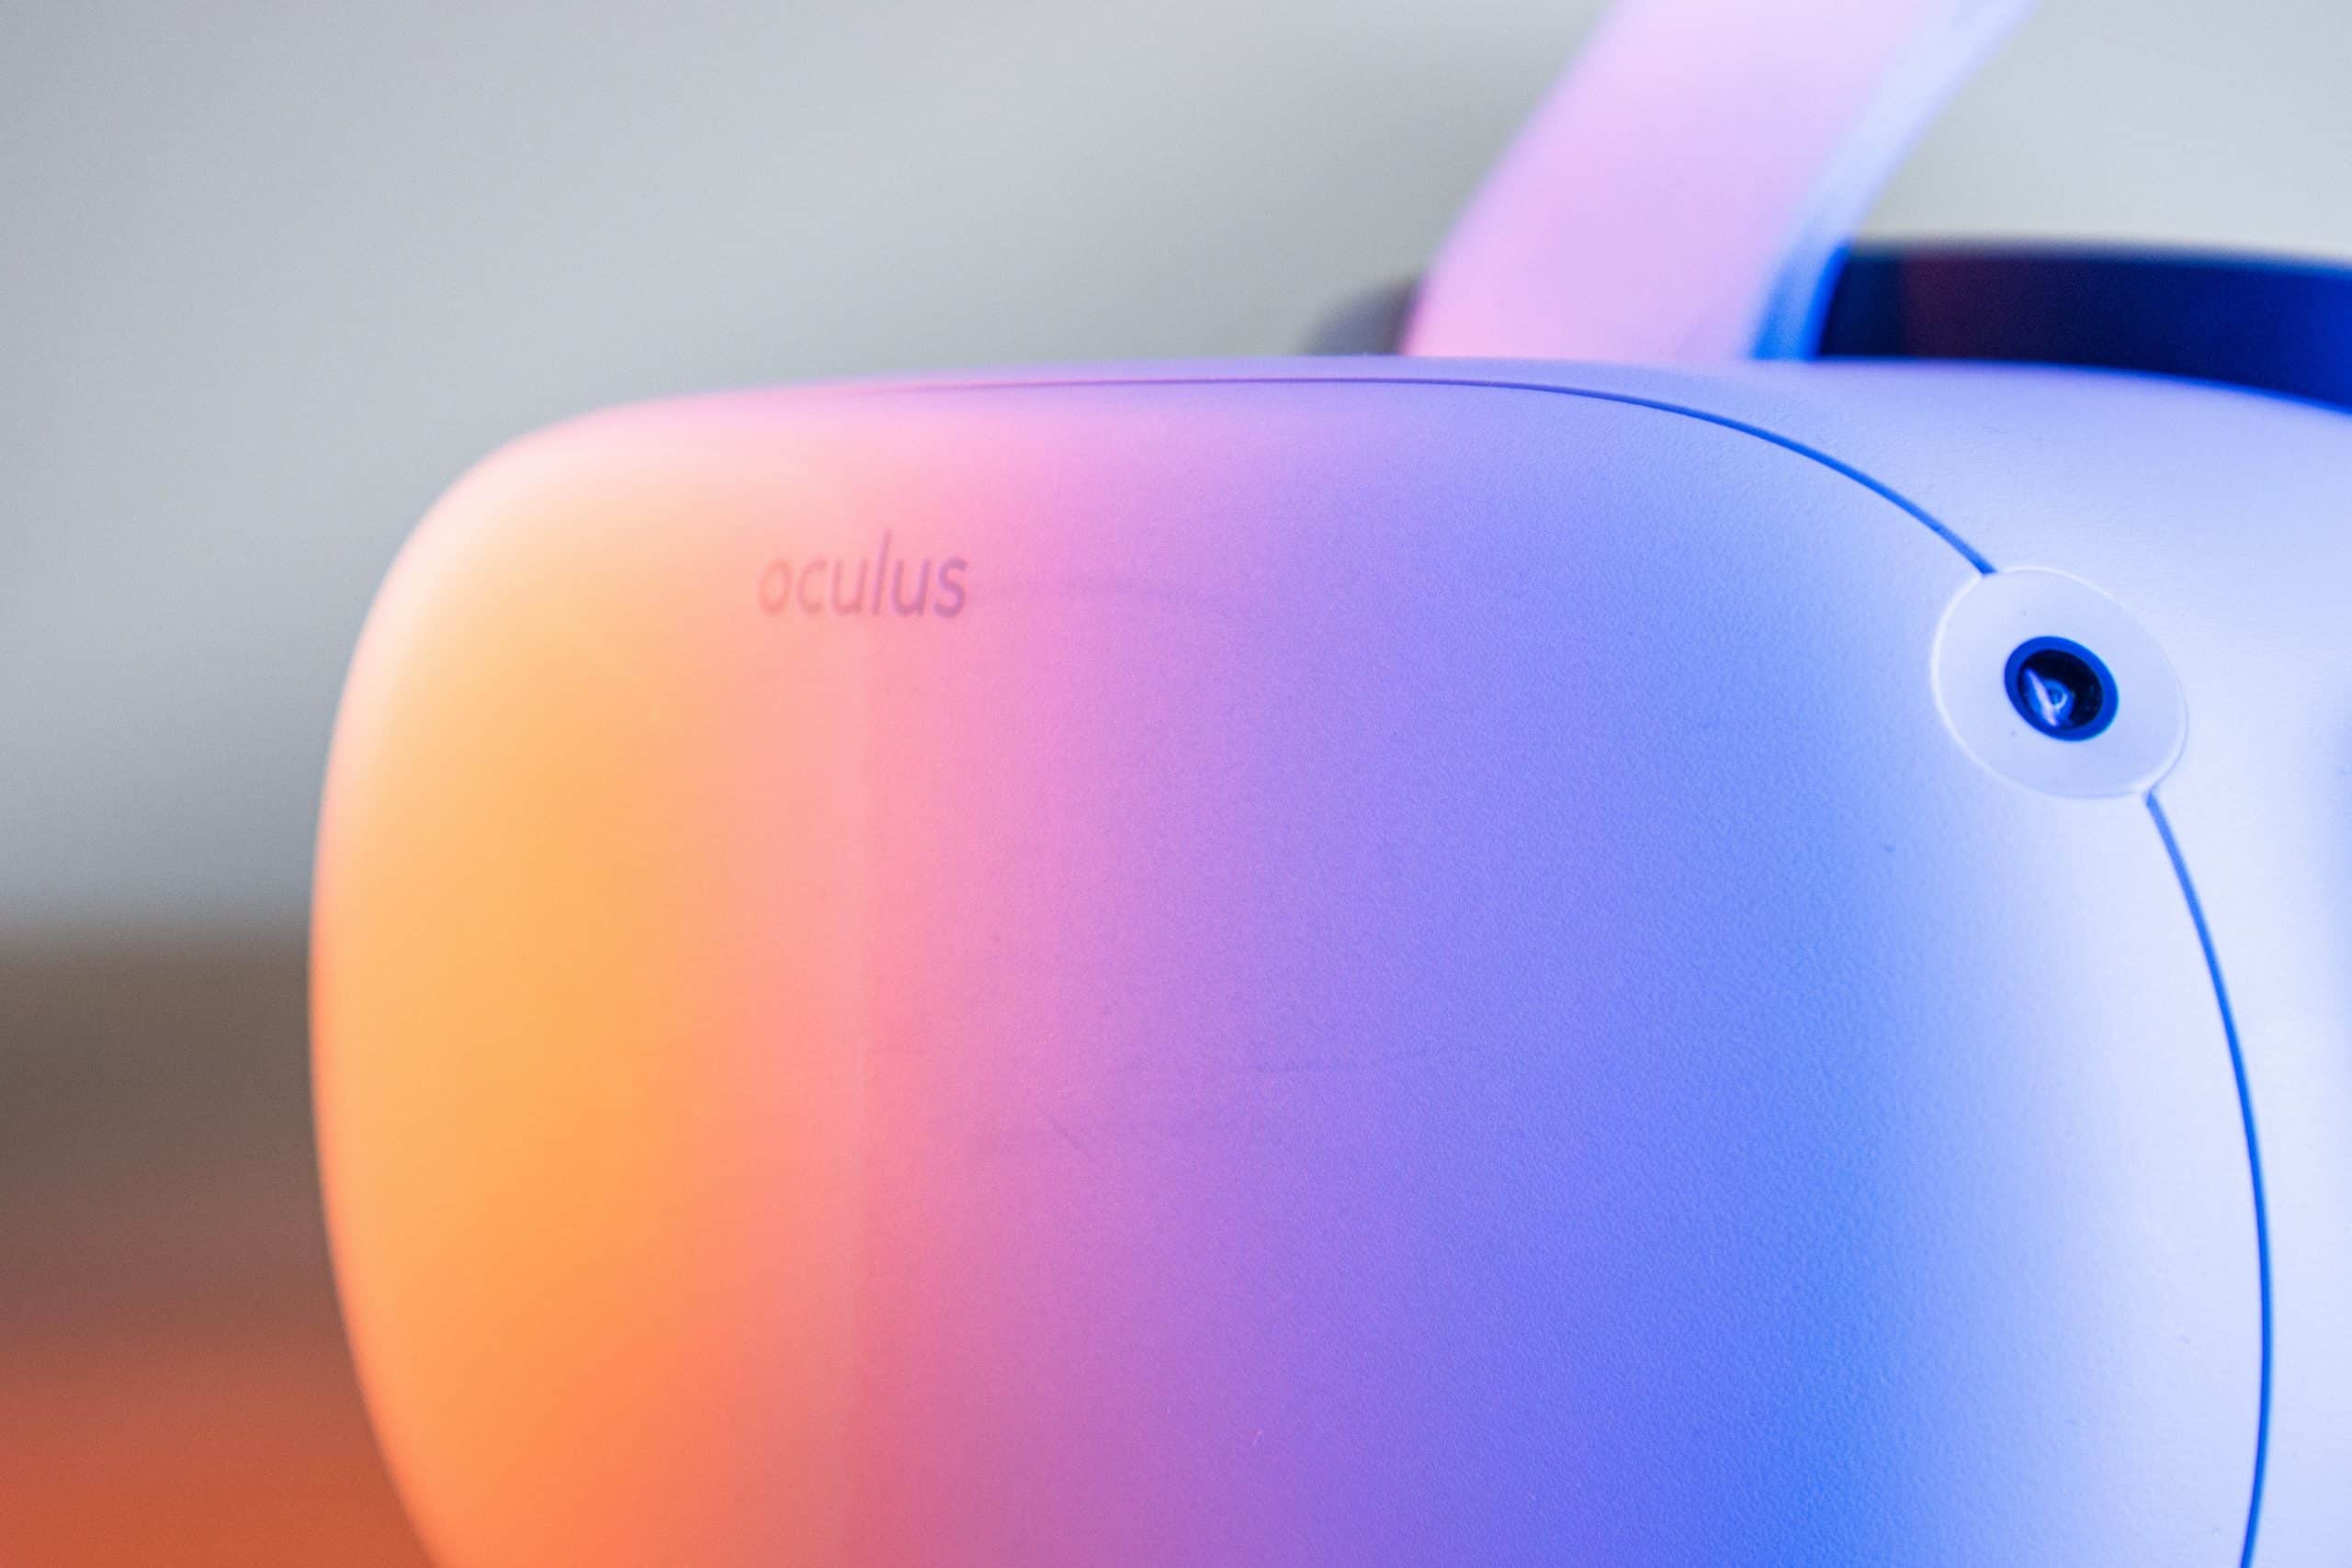 Un casque Oculus.